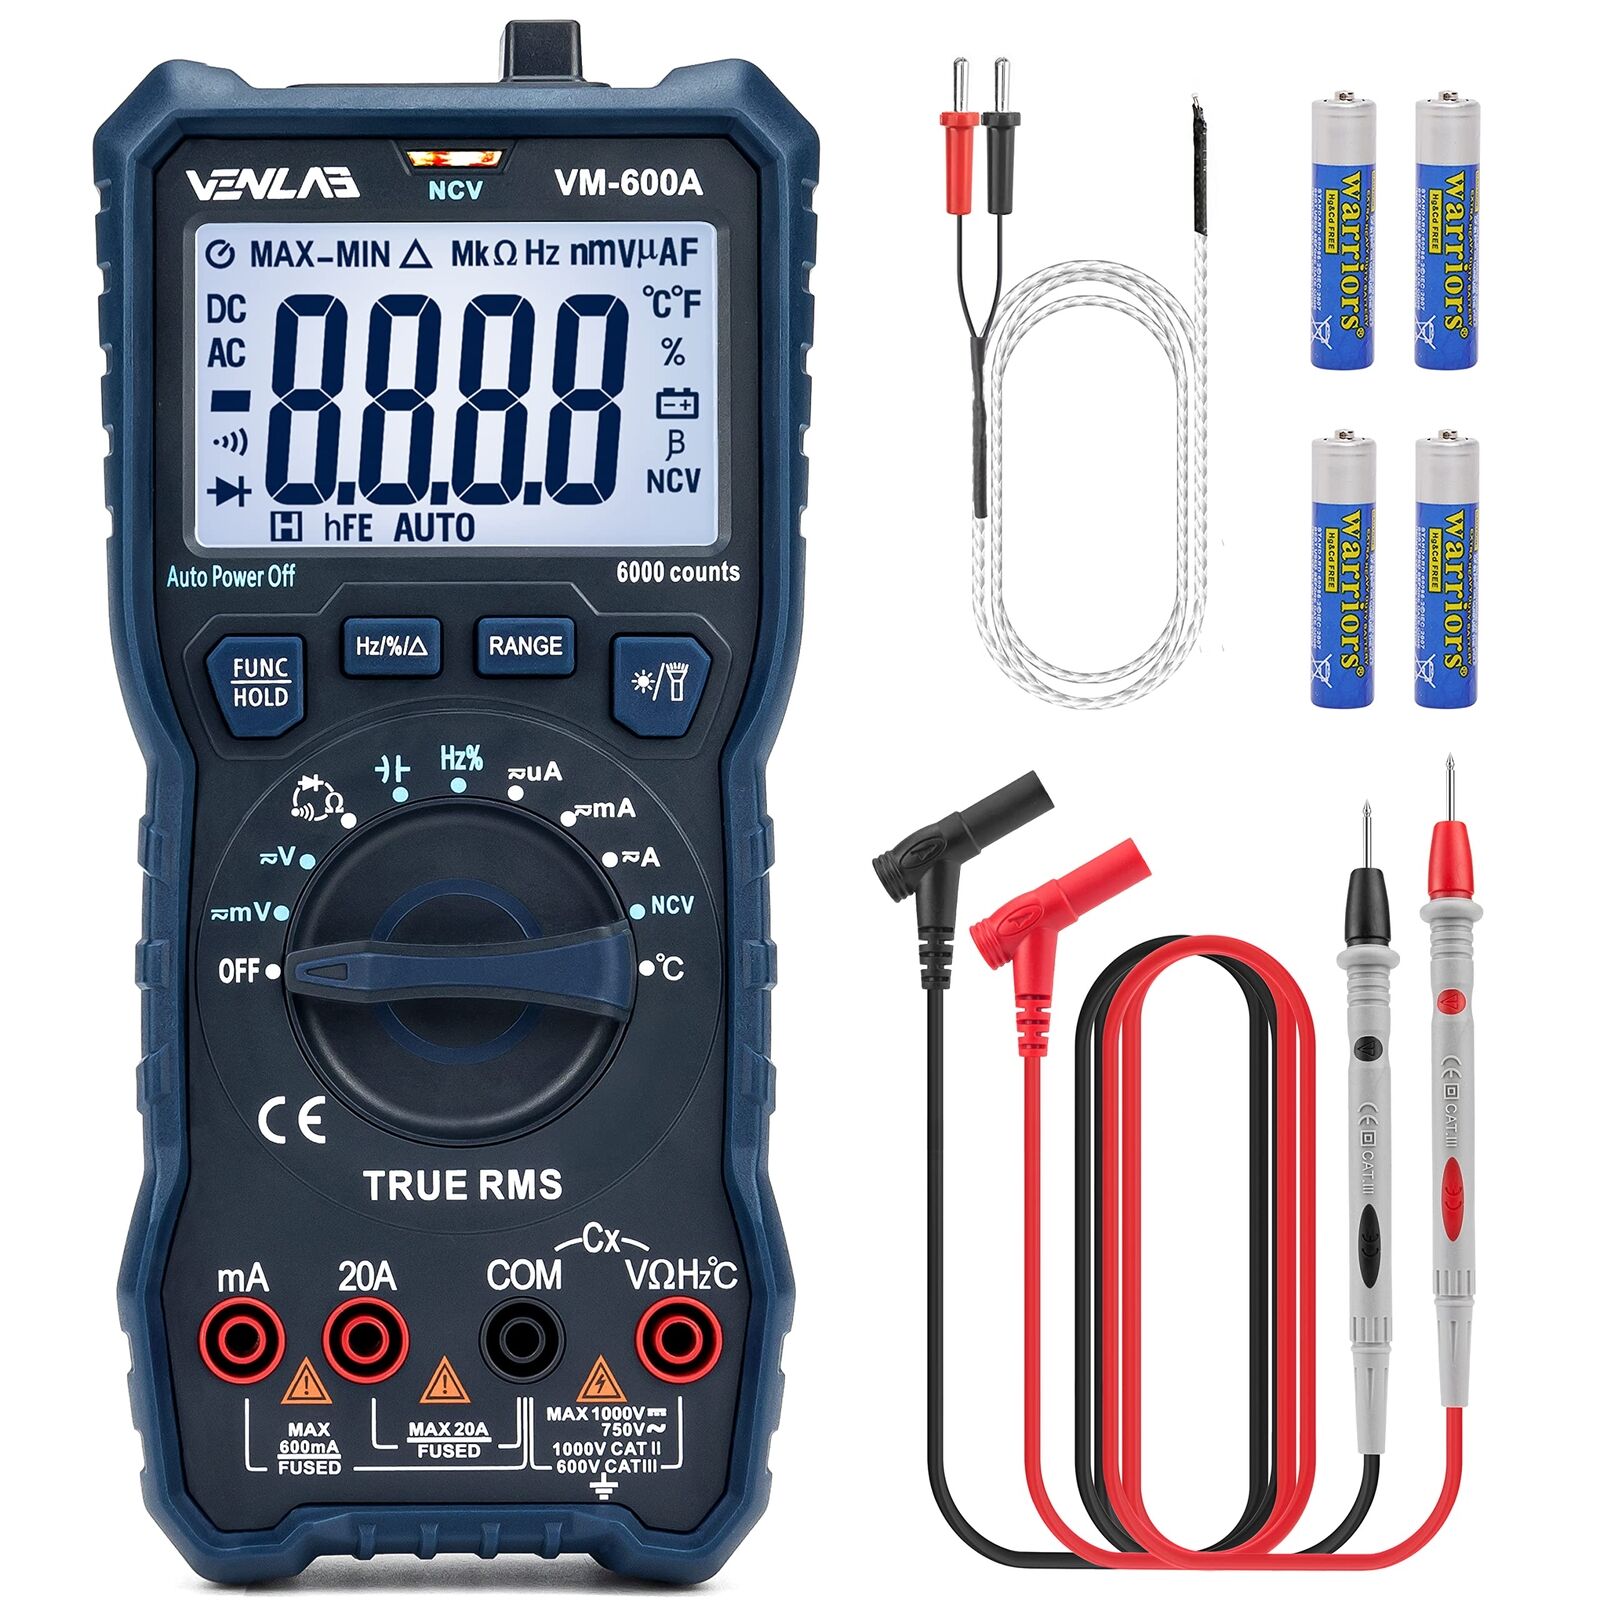 Venlab Tester 6000 Counts Digital Multimeter Ac/Dc Voltage Current VM600A